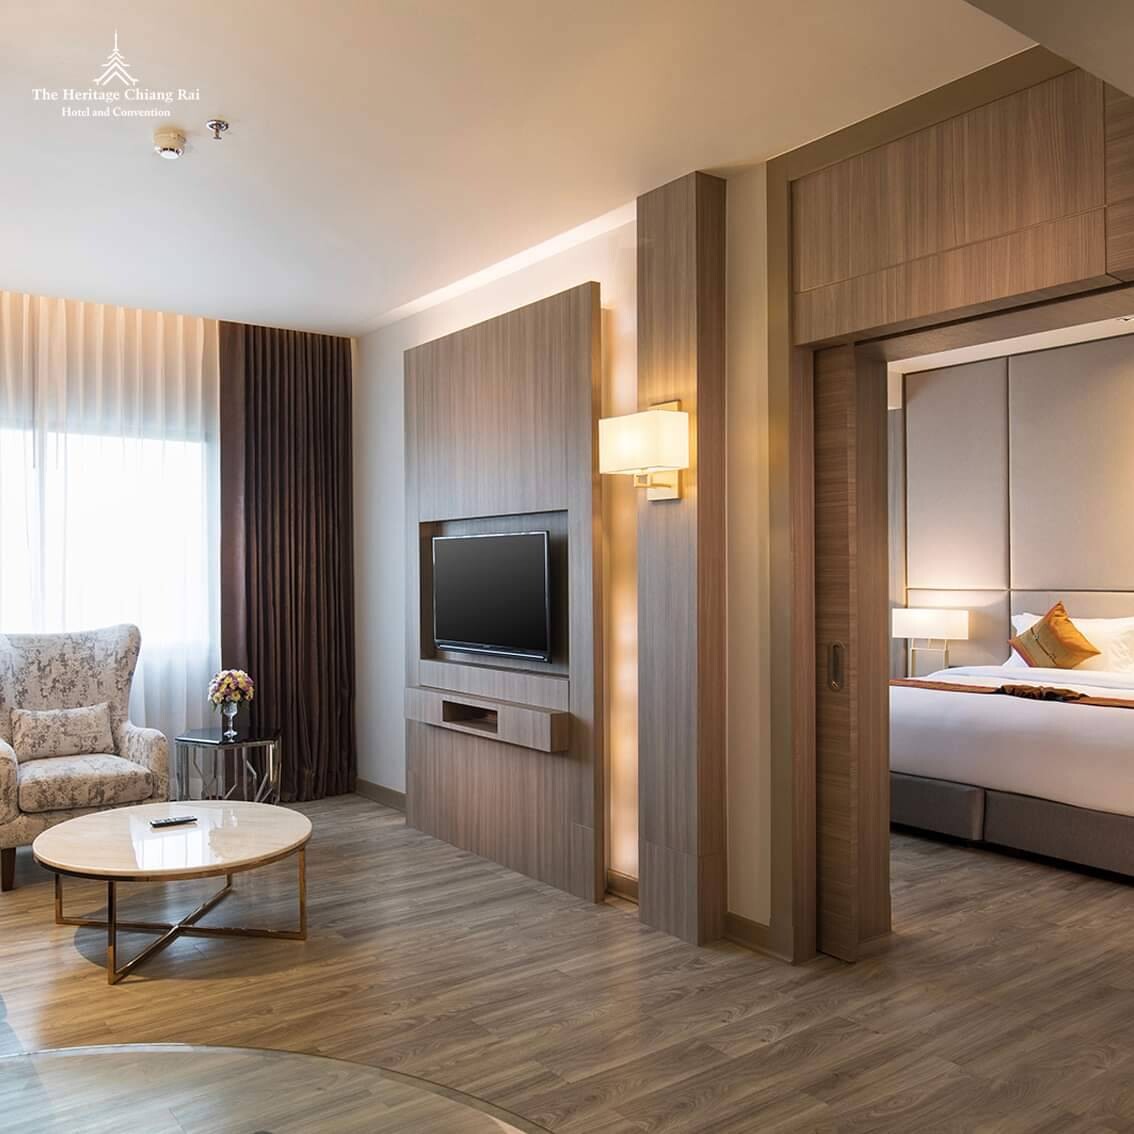 พักผ่อนระยะยาว Staycation ที่โรงแรมเฮอริเทจ เชียงราย โฮเทล แอนด์ คอนเวนชั่น ด้วยราคาเริ่มต้นคืนละ 925 บาท